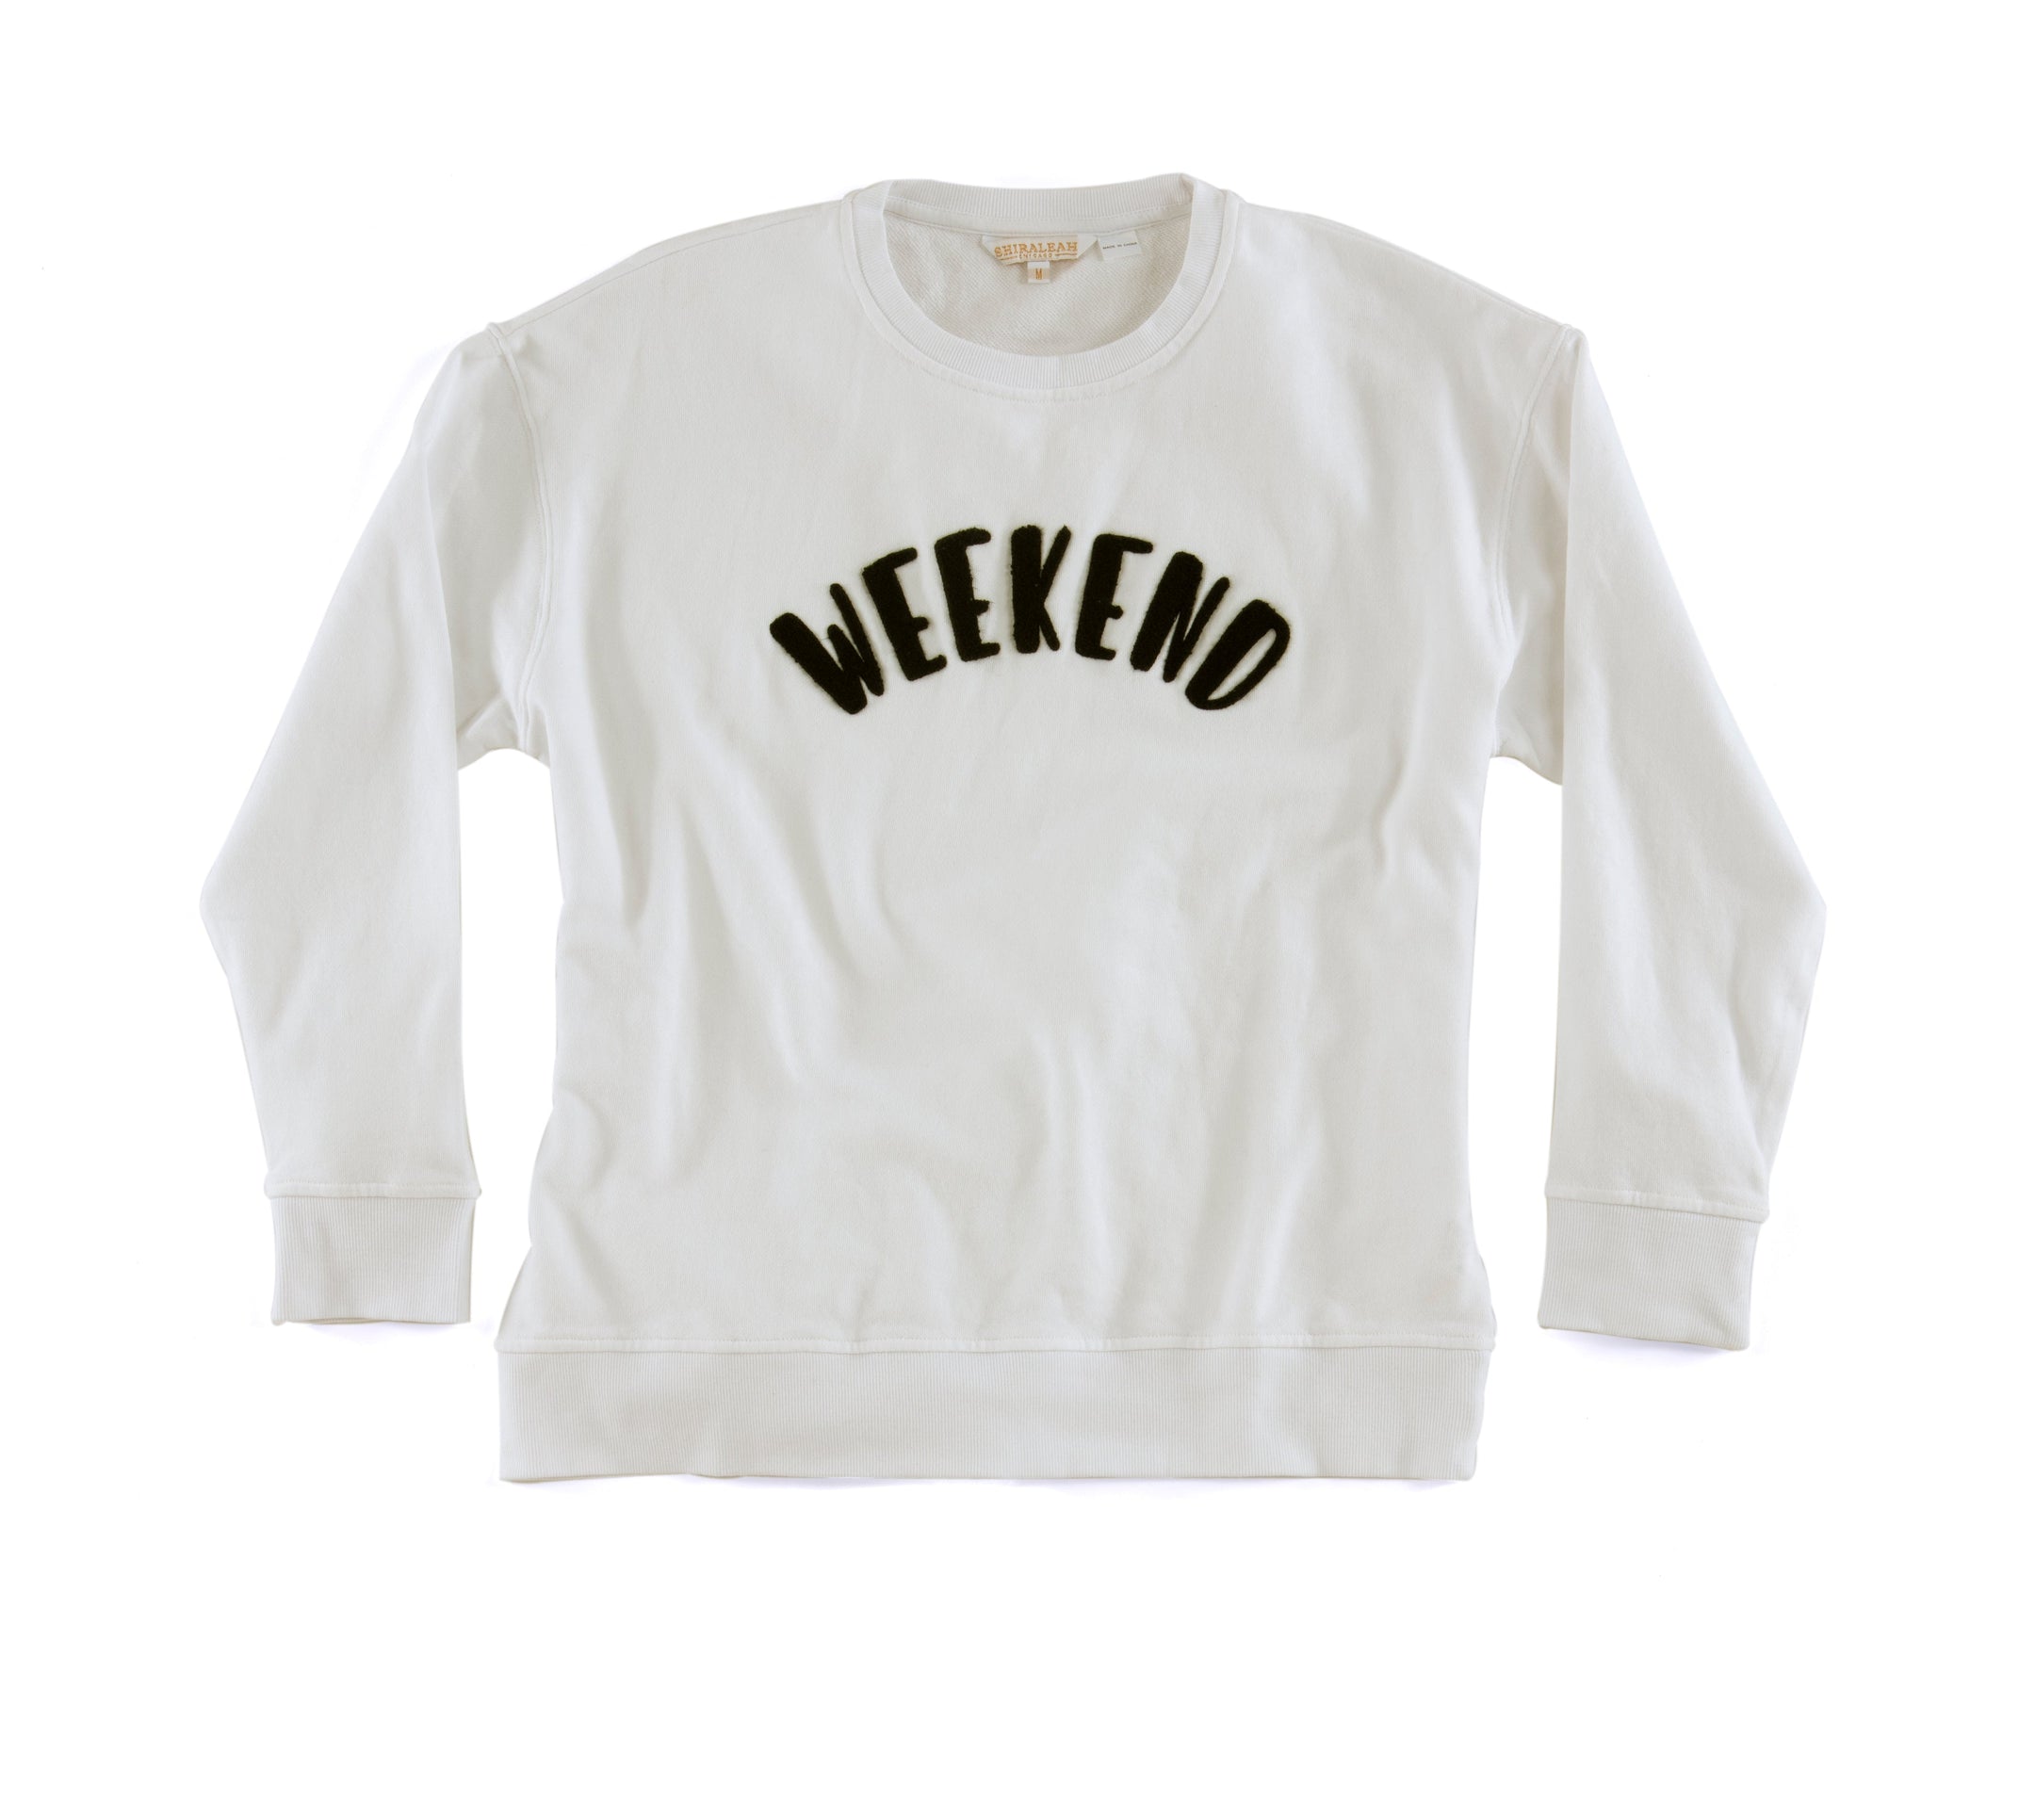 Buy "Weekend" Sweatshirt, Ivory by Shiraleah